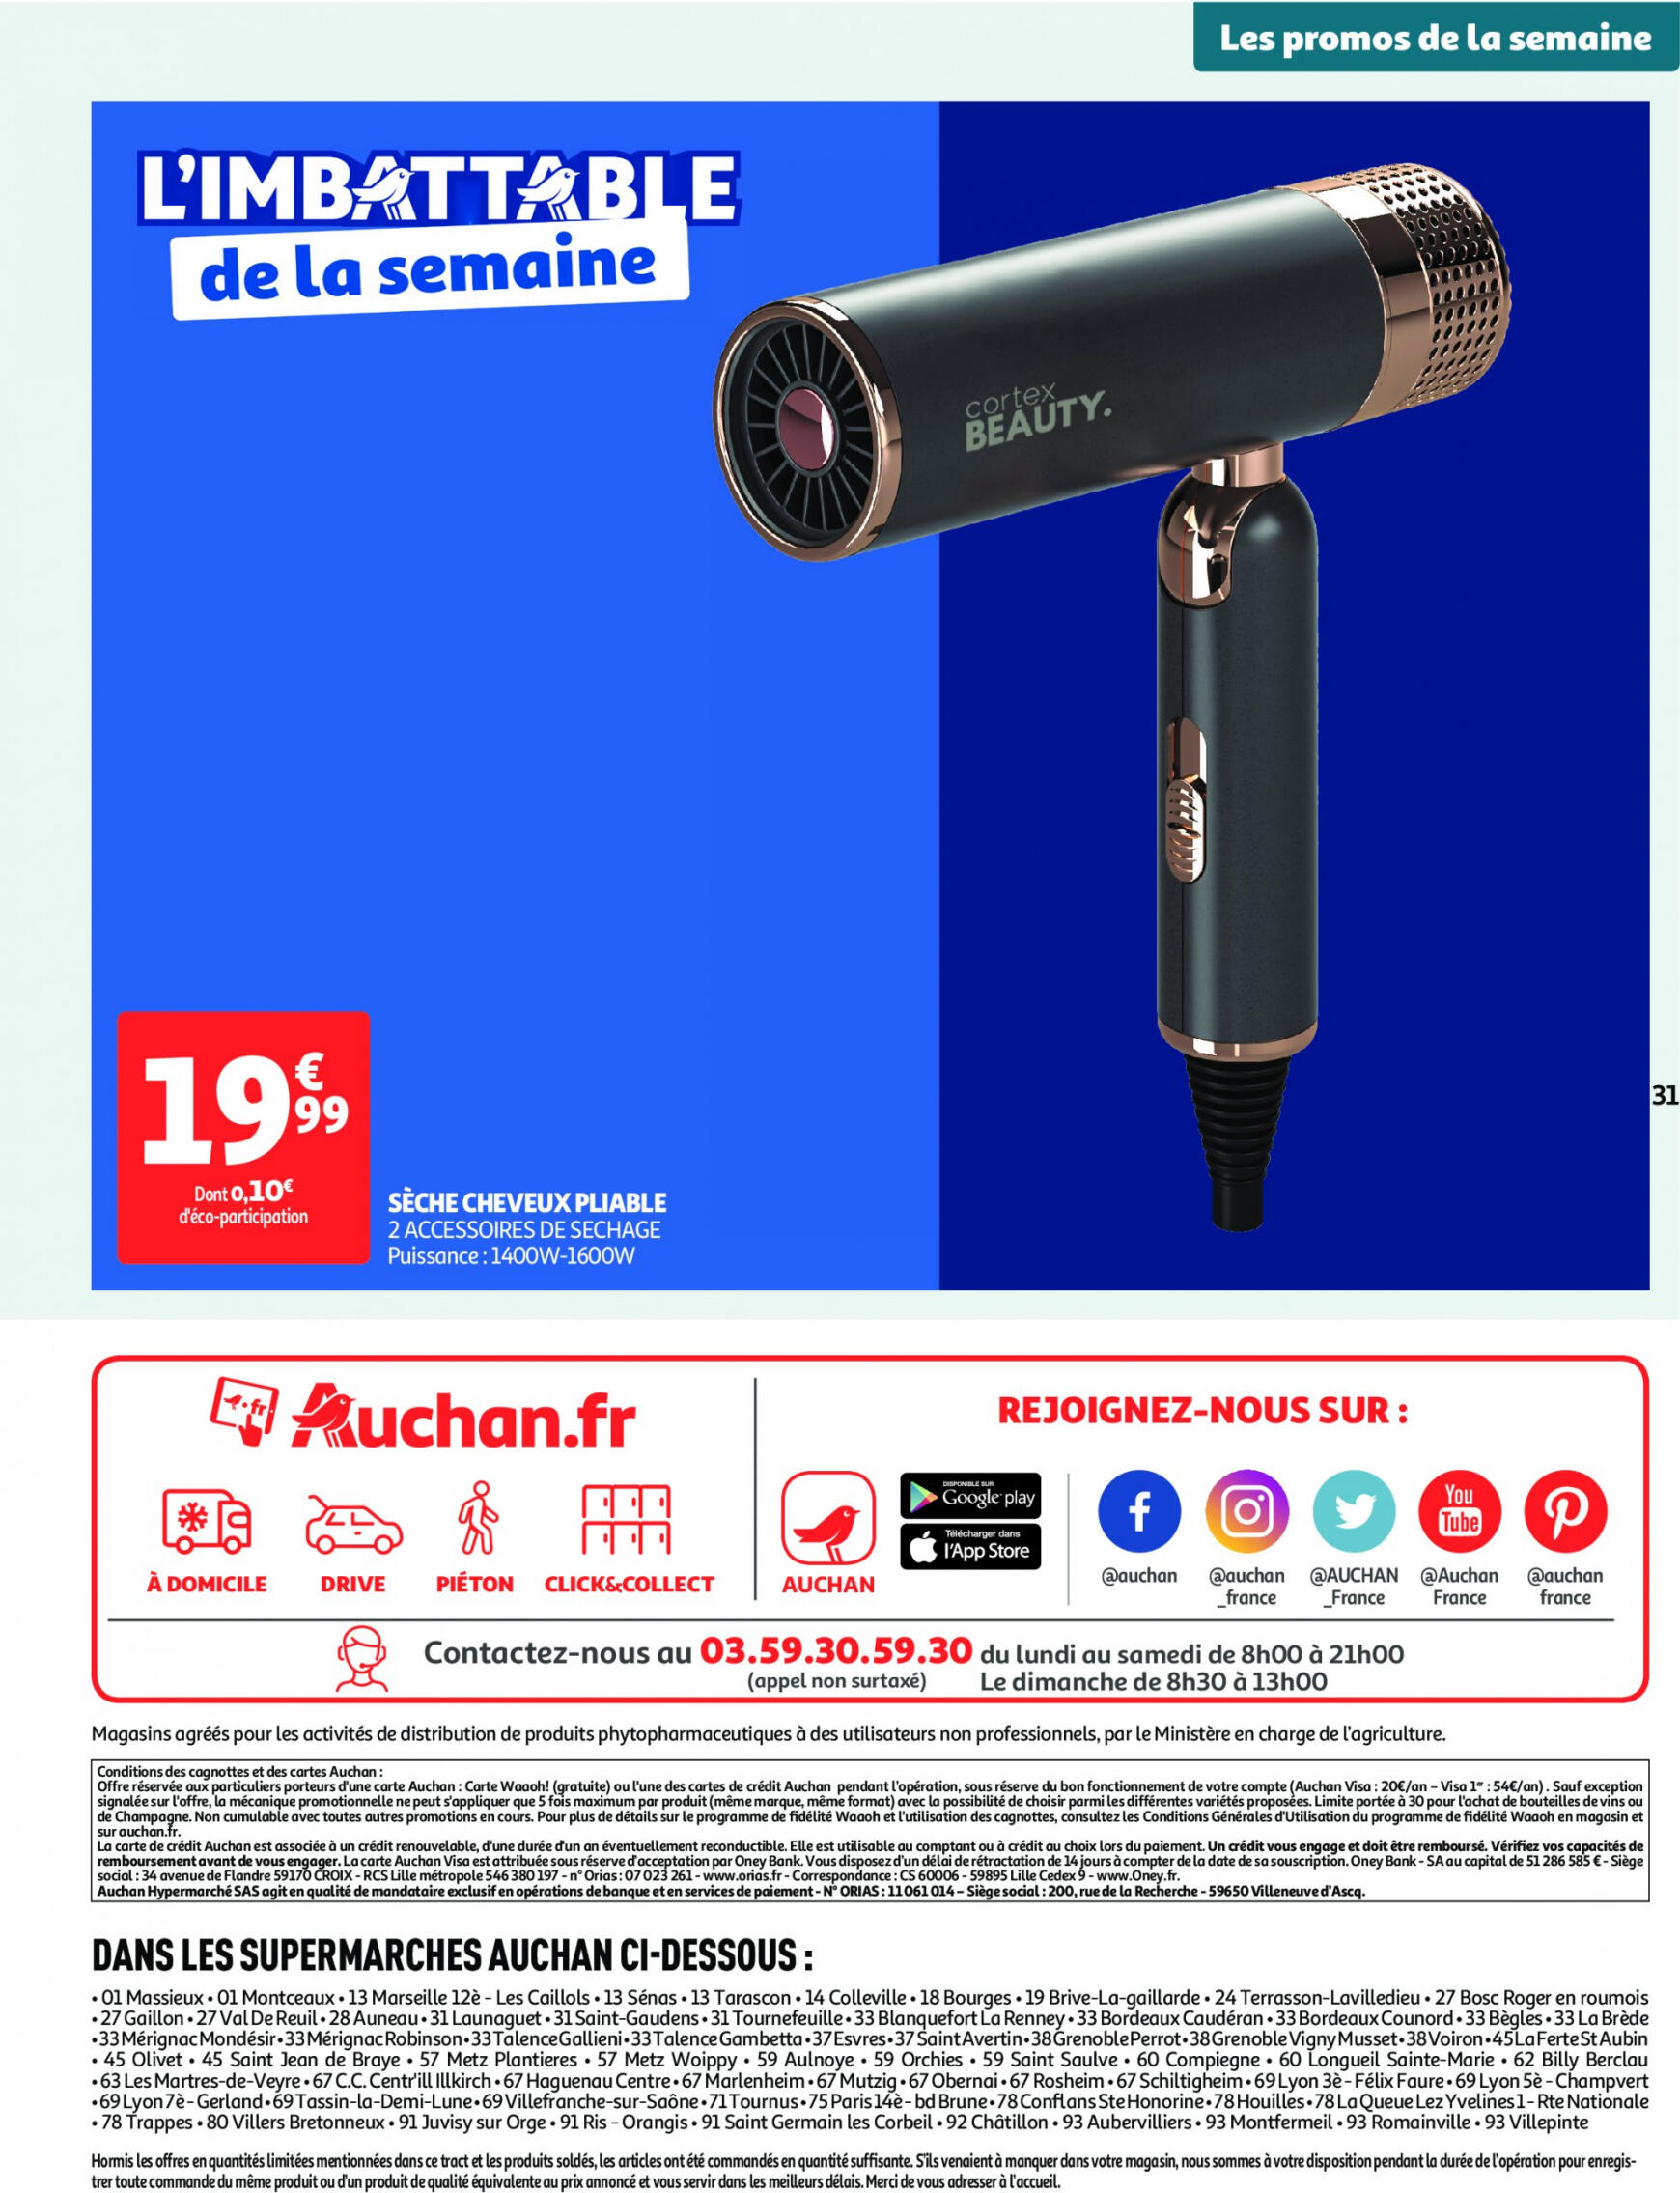 auchan - Auchan supermarché - Faites le plein de bonnes affaires folder huidig 22.05. - 26.05. - page: 31